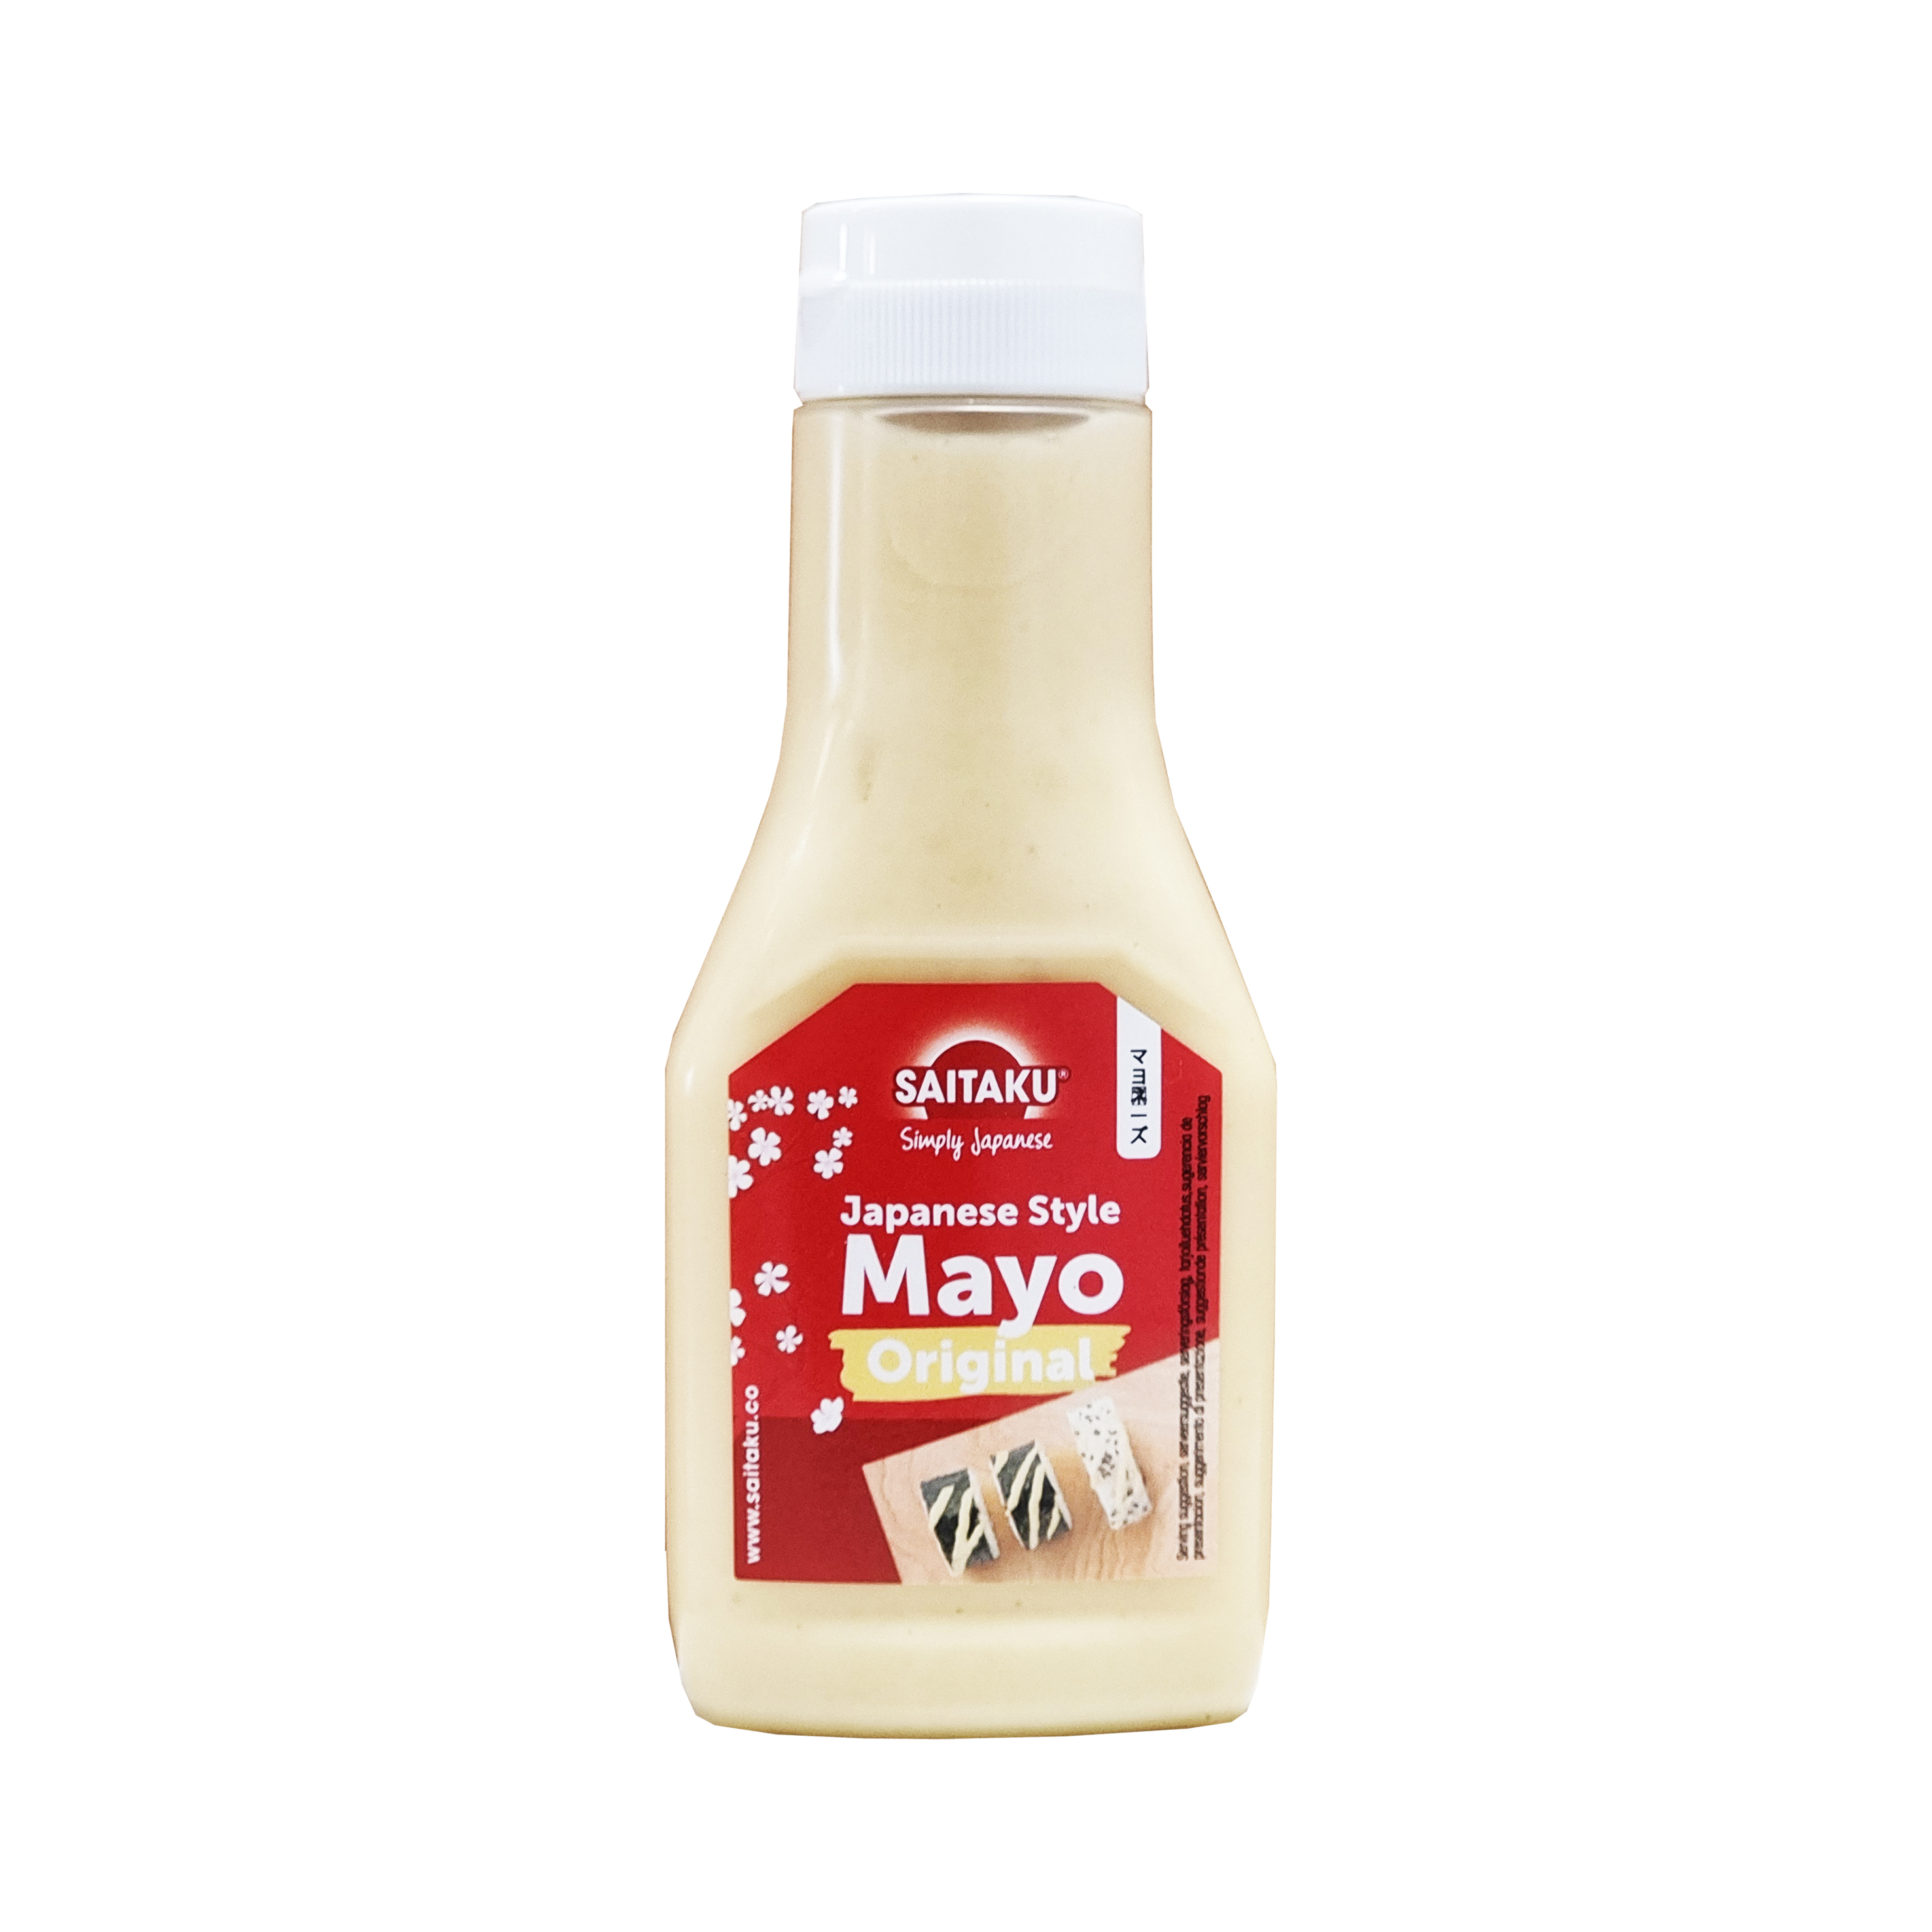 Saitaku Mayo Original 